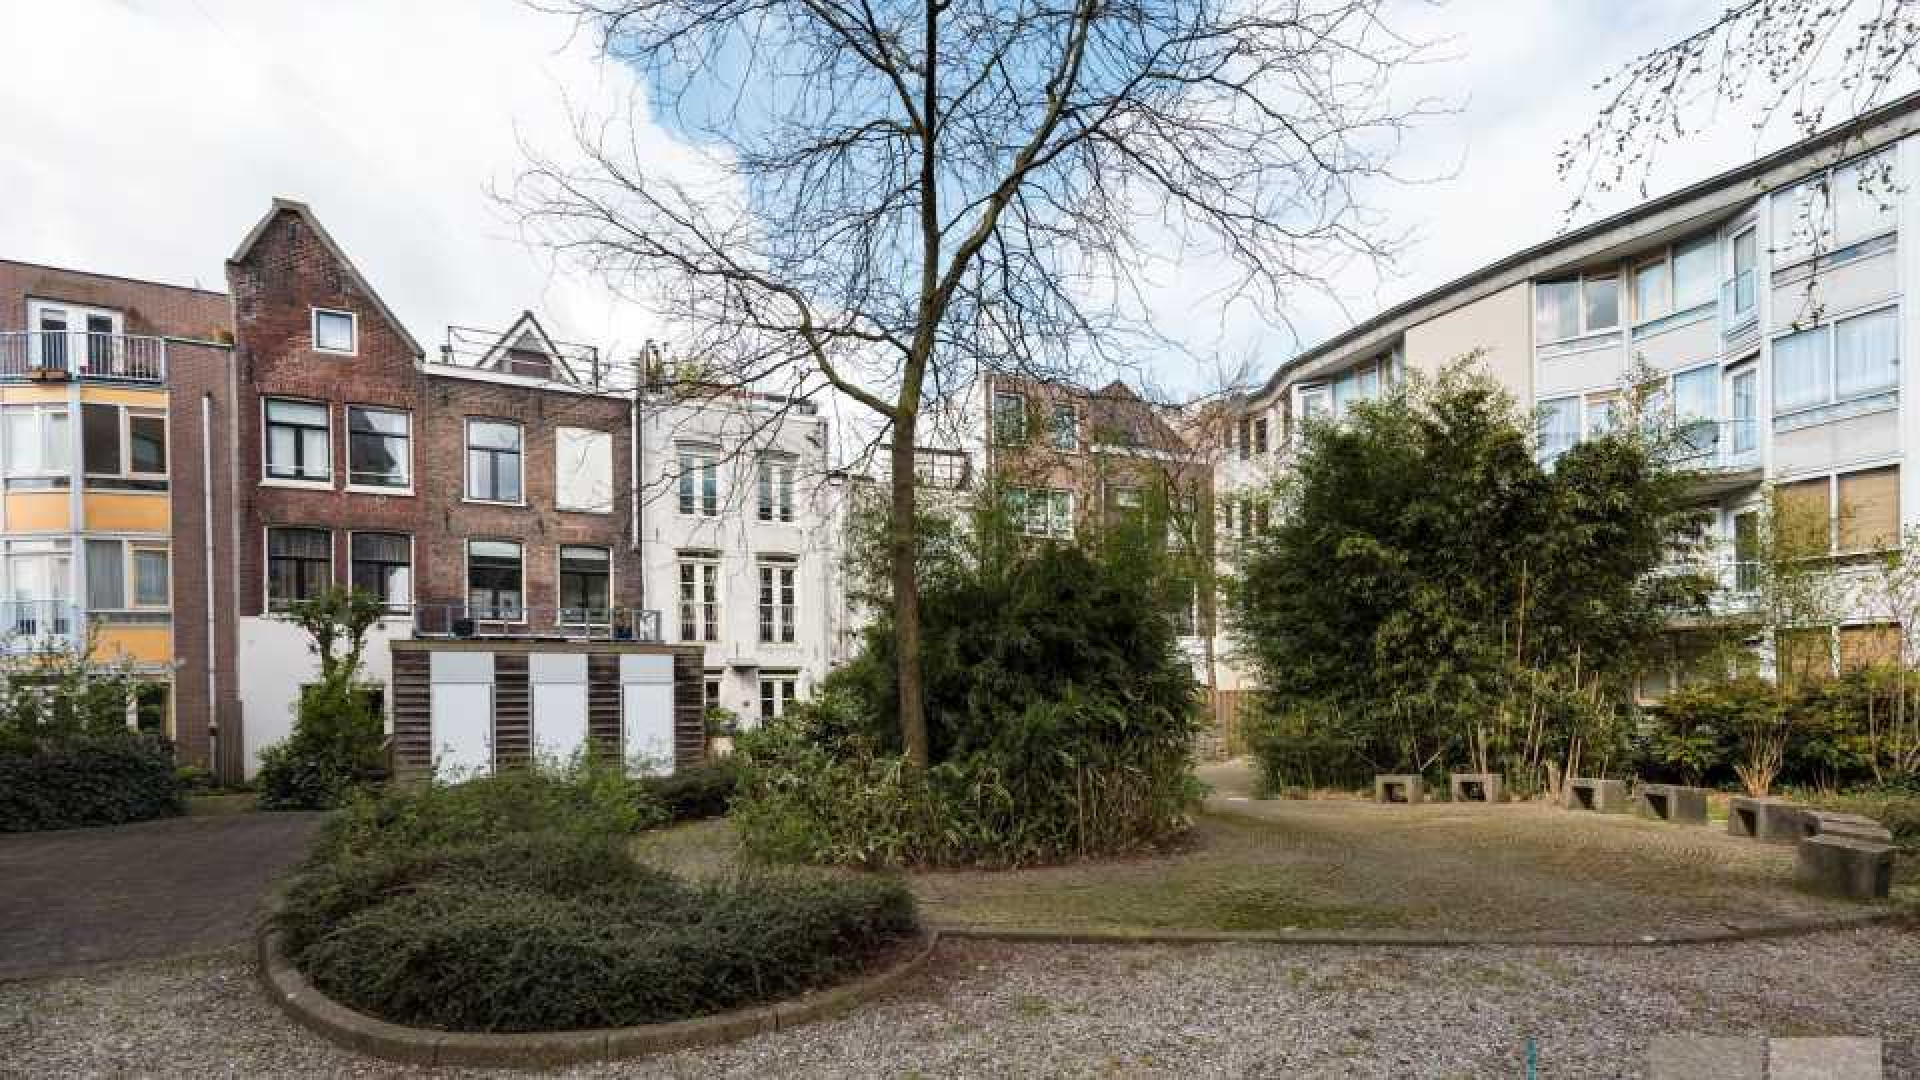 Oud PvdA topman Rob Oudkerk zet zijn scheidingshuis te koop. Zie foto's